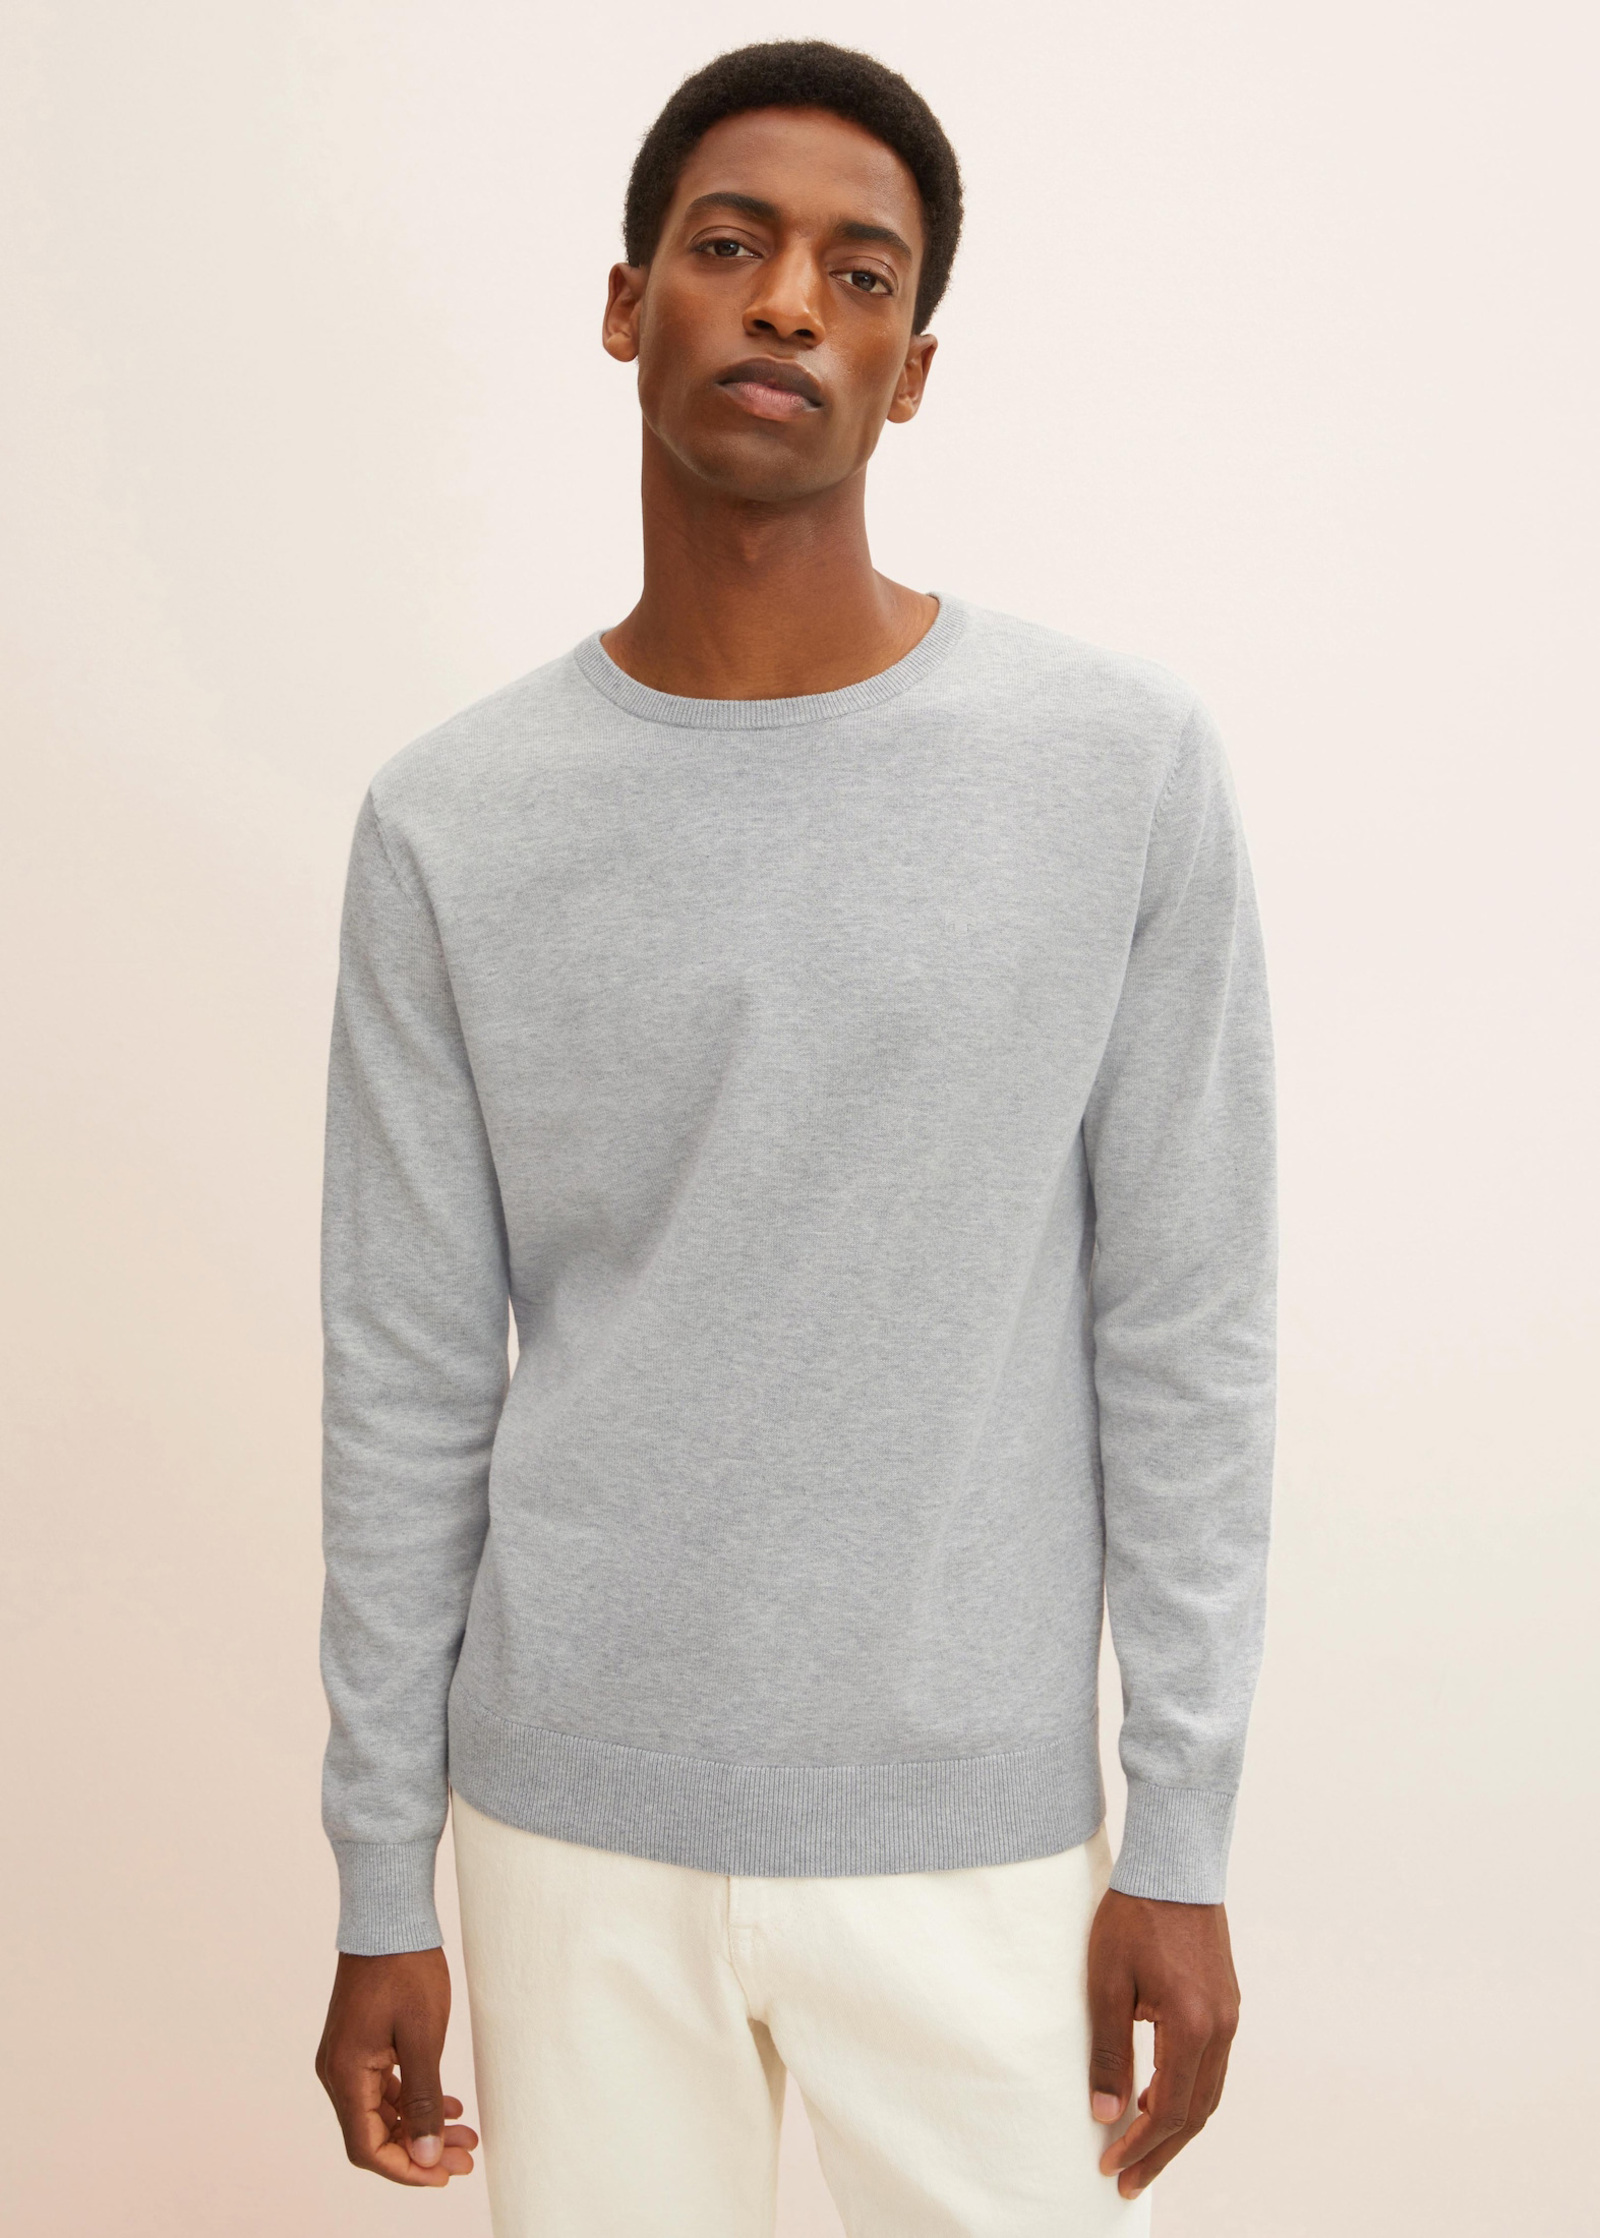 Tom Tailor® Simple Grey Size knitted S Light Melange - jumper Soft